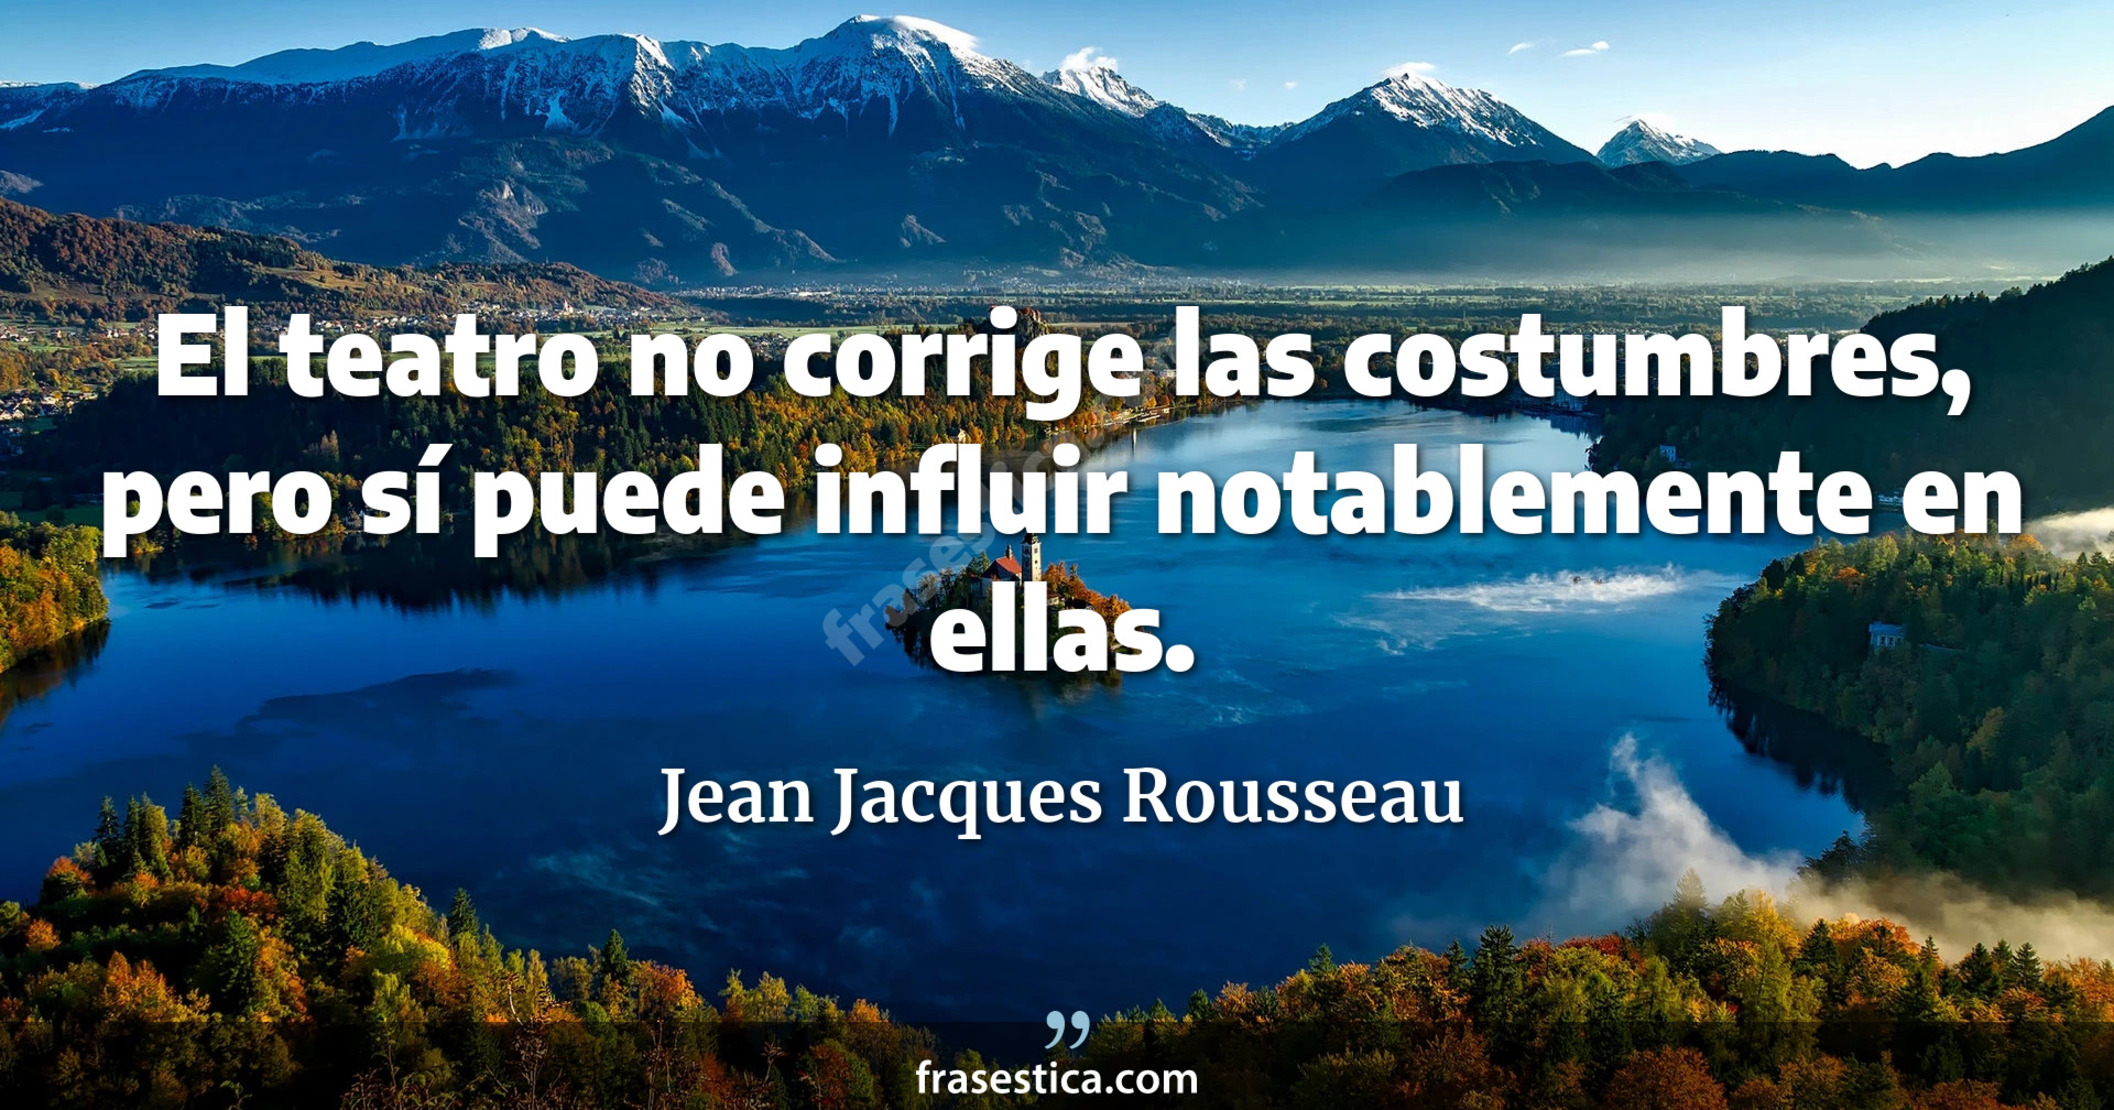 El teatro no corrige las costumbres, pero sí puede influir notablemente en ellas. - Jean Jacques Rousseau